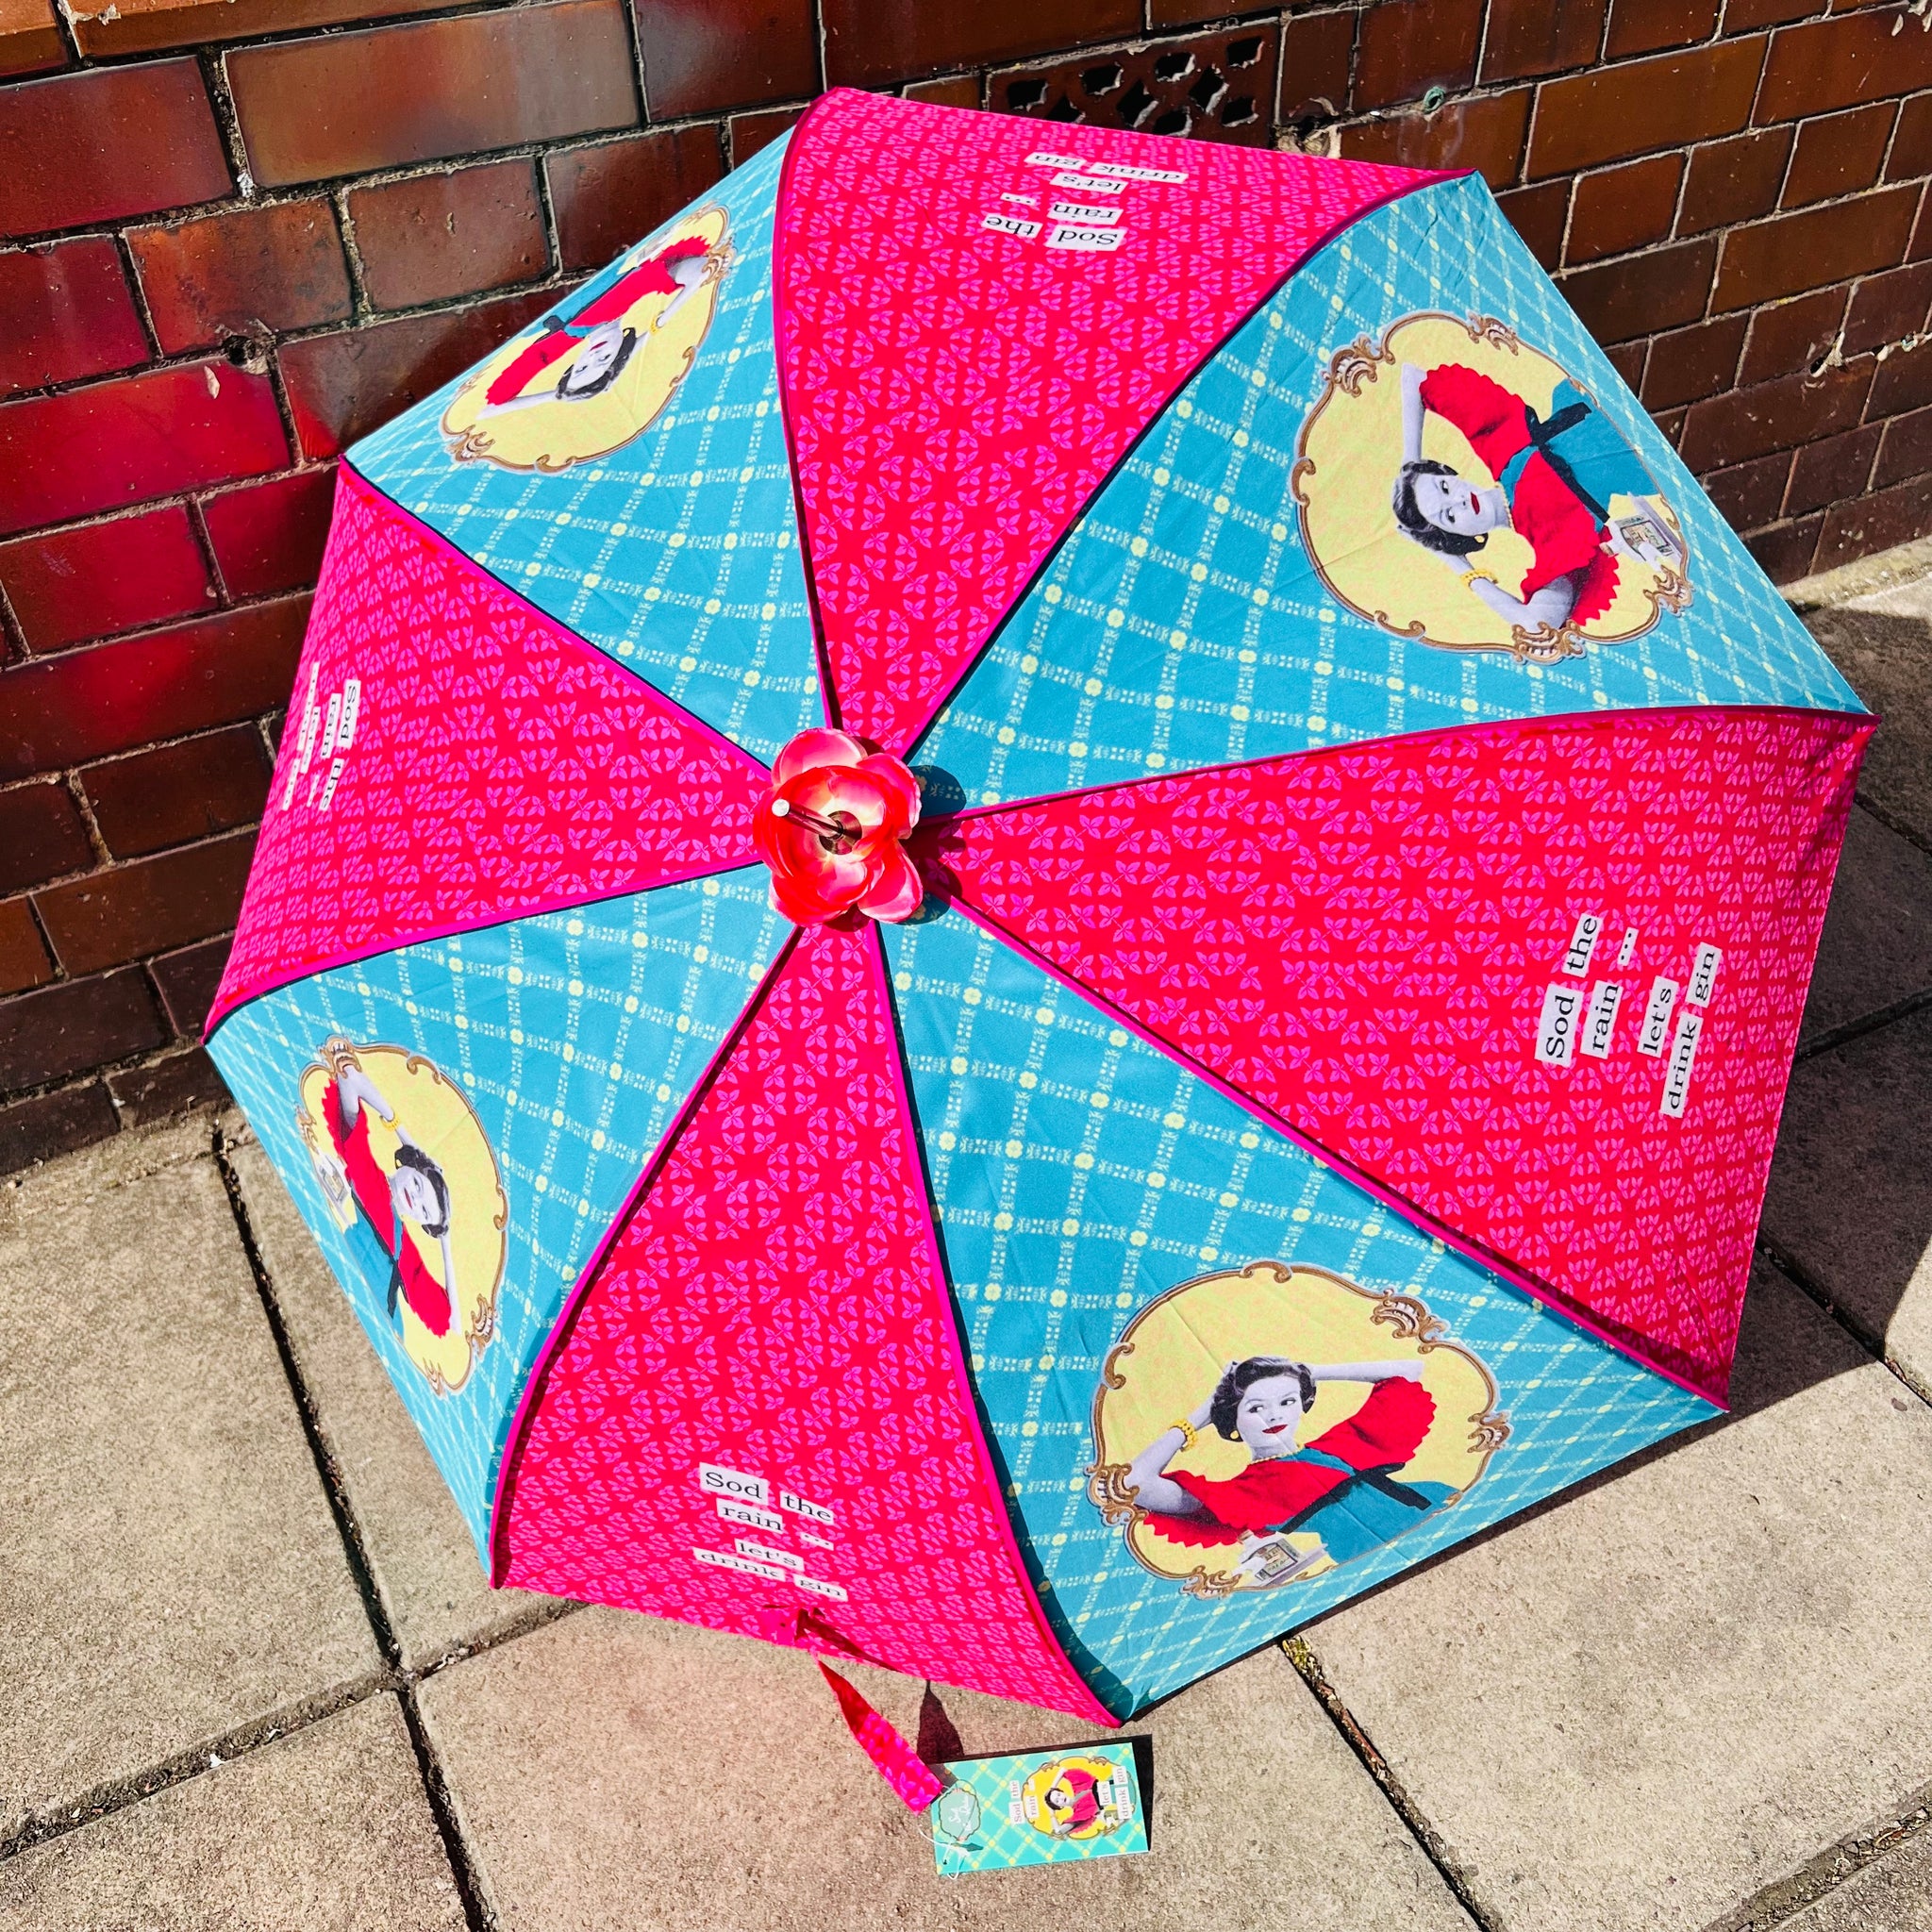 Retro Umbrella - Sod The Rain … Let’s Drink Gin